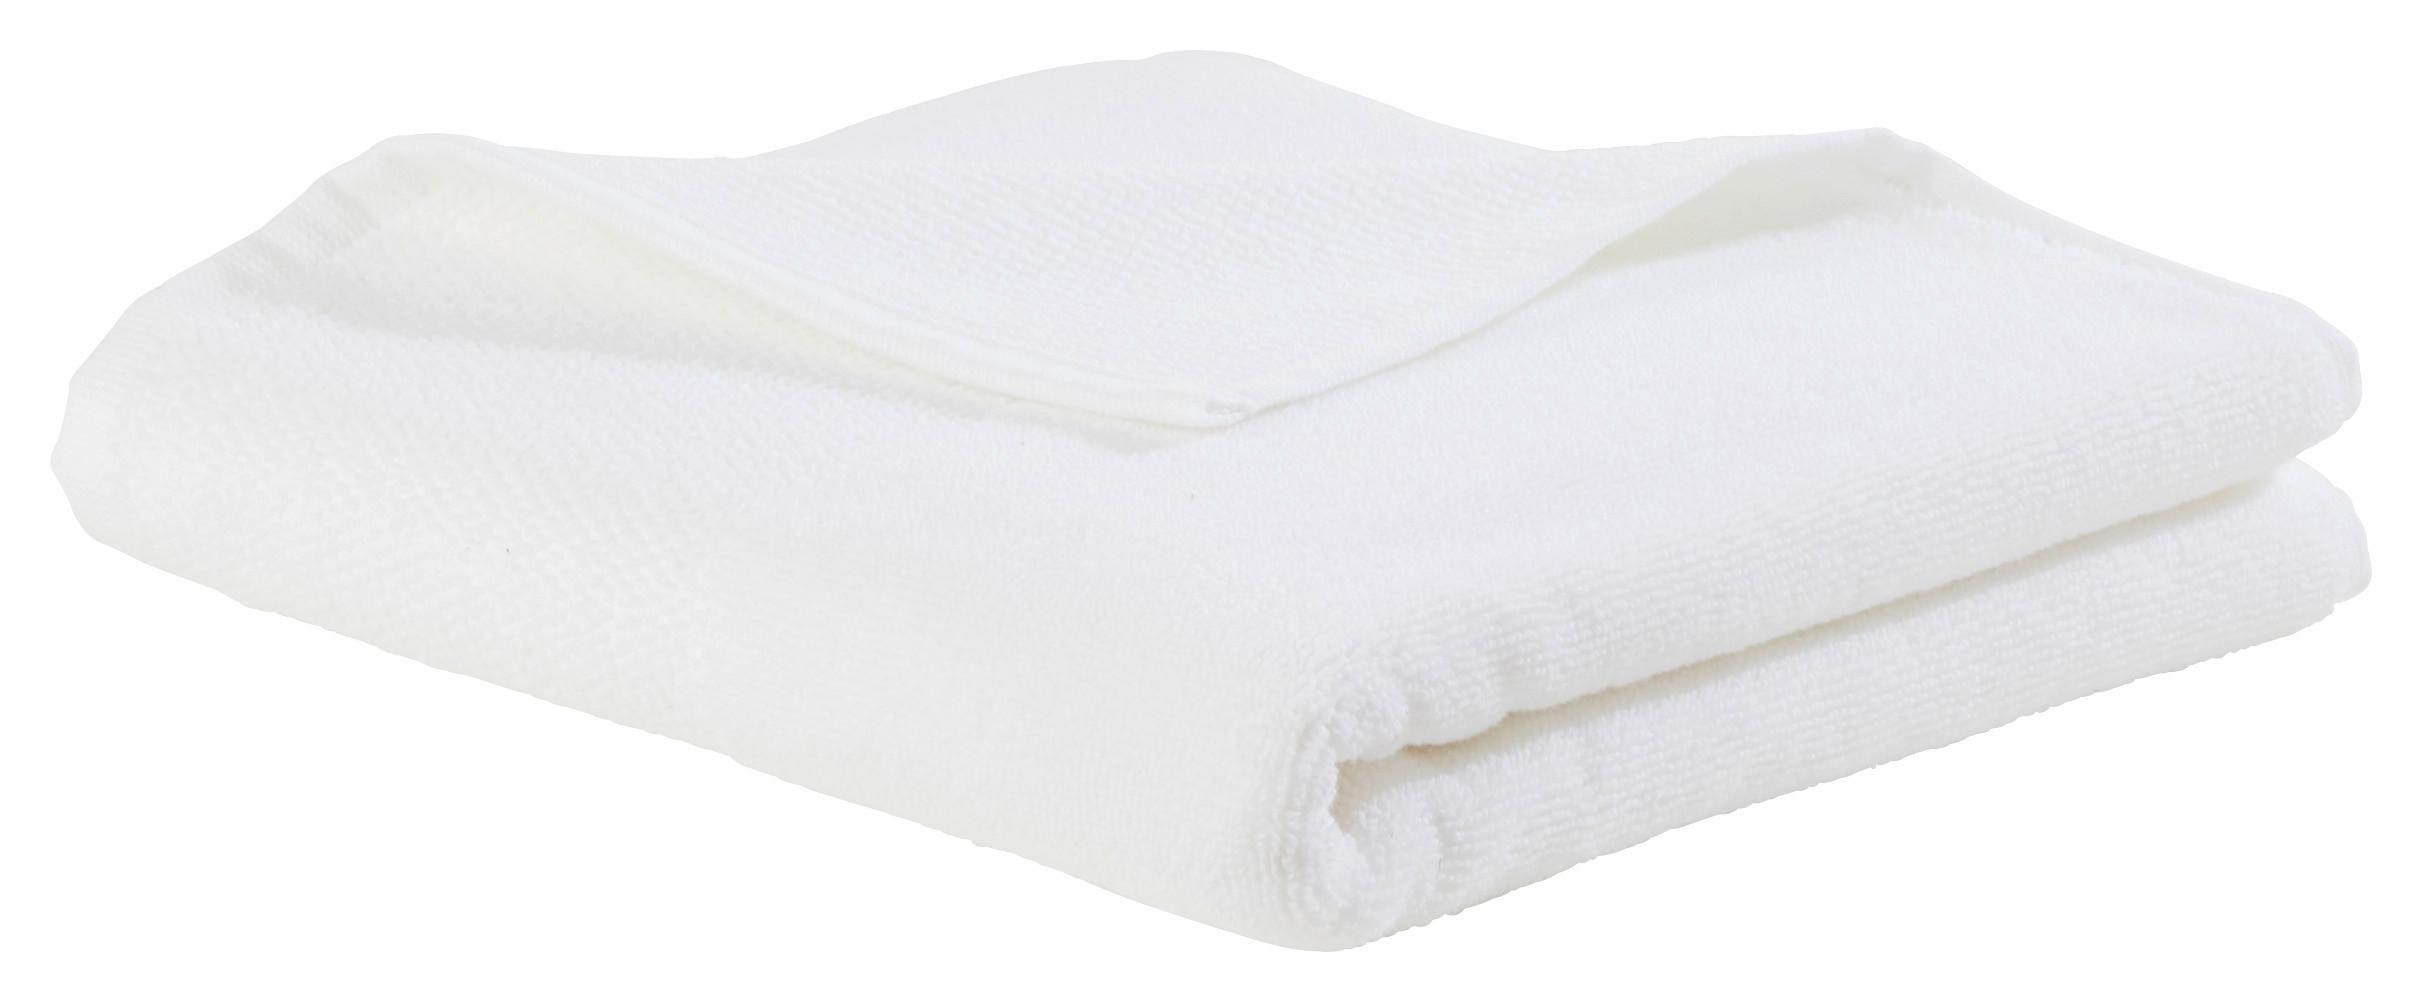 Kéztörlő Olivia - Fehér, konvencionális, Textil (50/100cm) - Premium Living